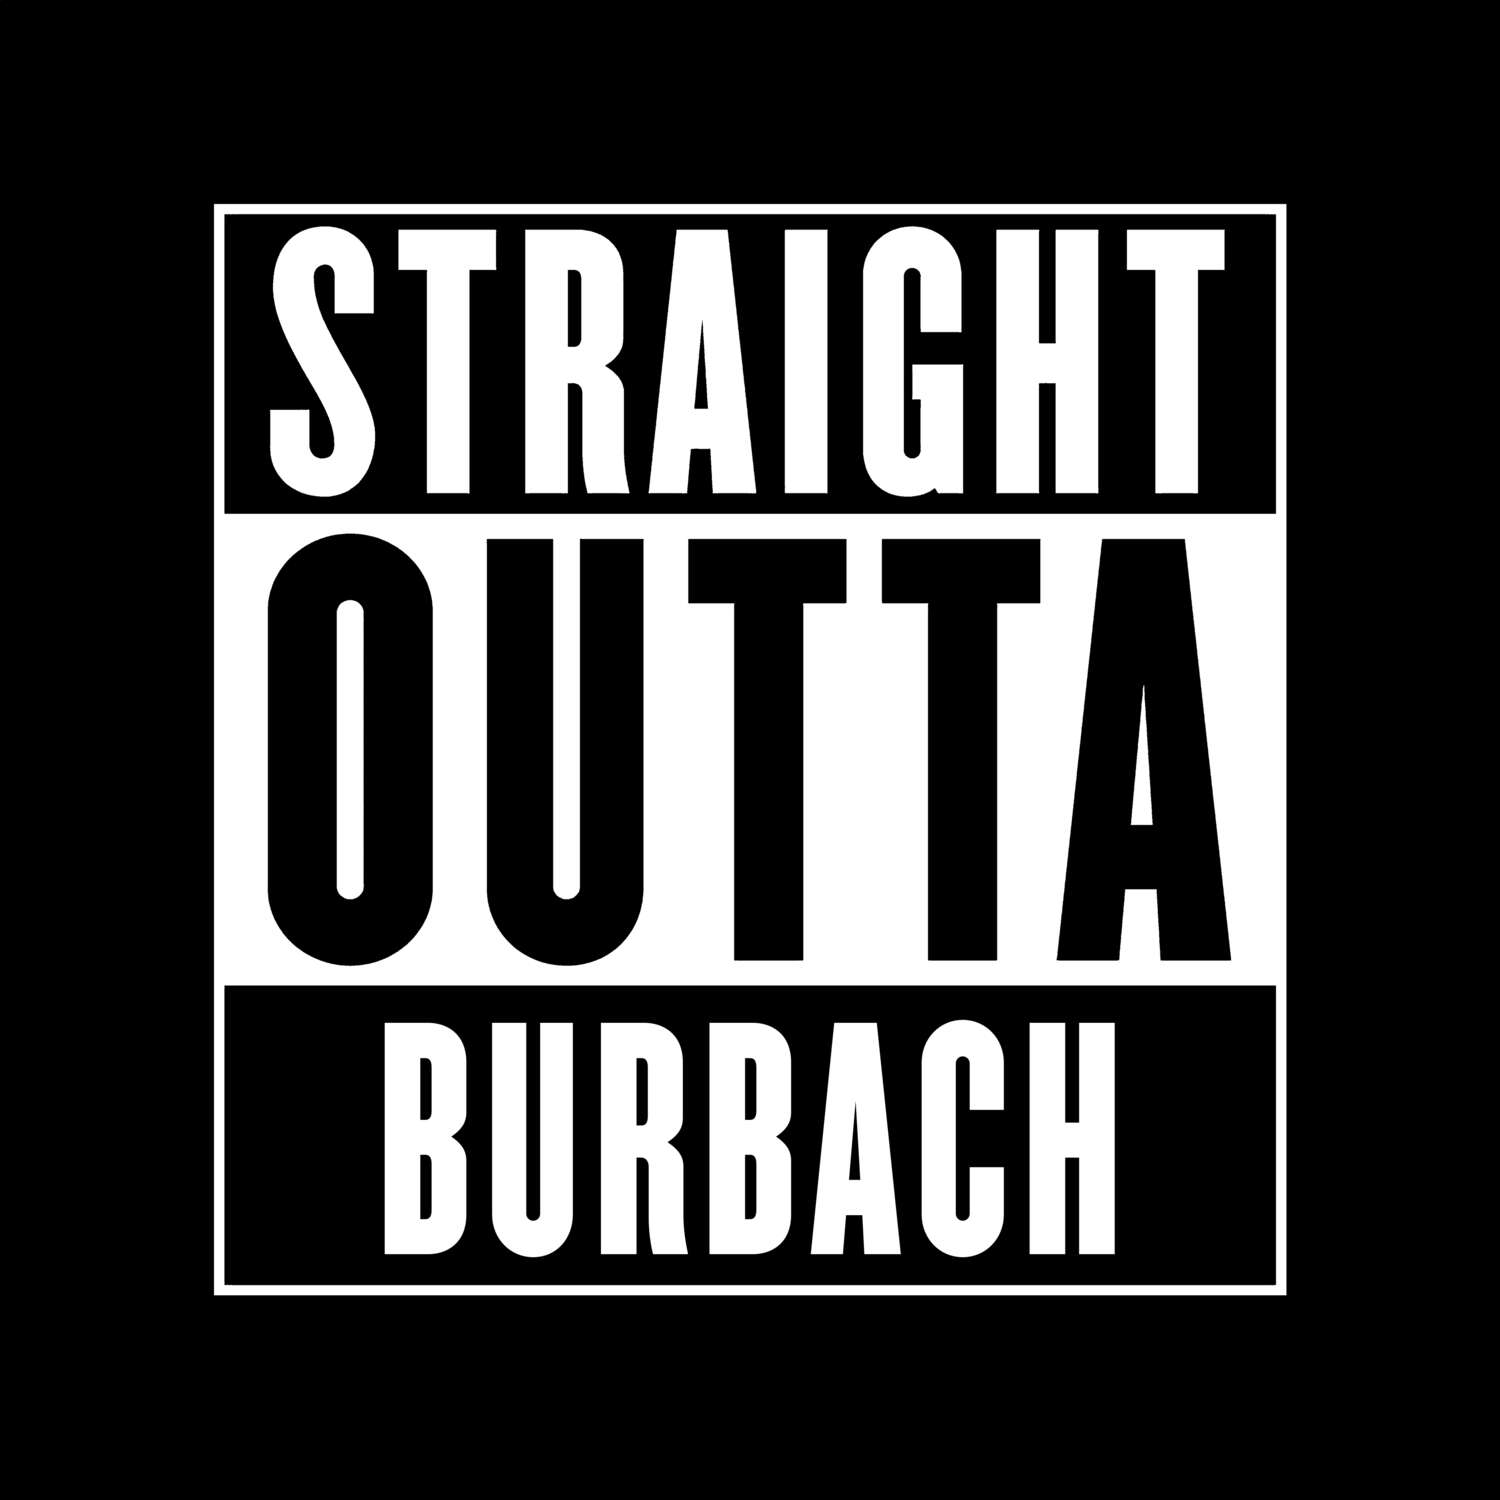 Burbach T-Shirt »Straight Outta«